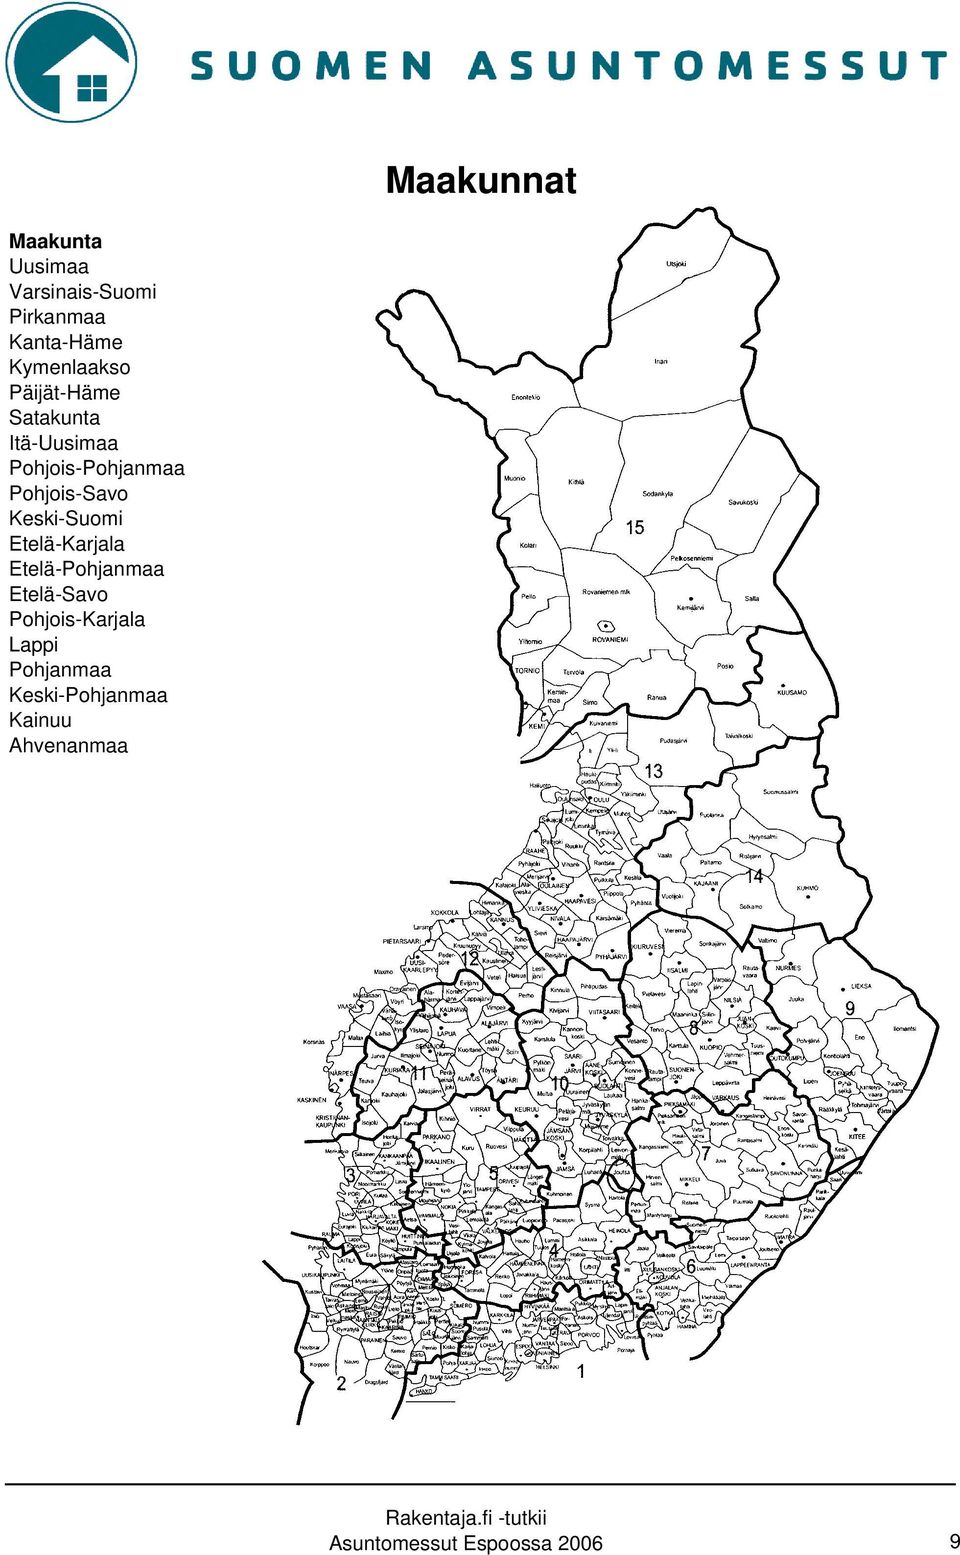 Pohjois-Savo Keski-Suomi Etelä-Karjala Etelä-Pohjanmaa Etelä-Savo